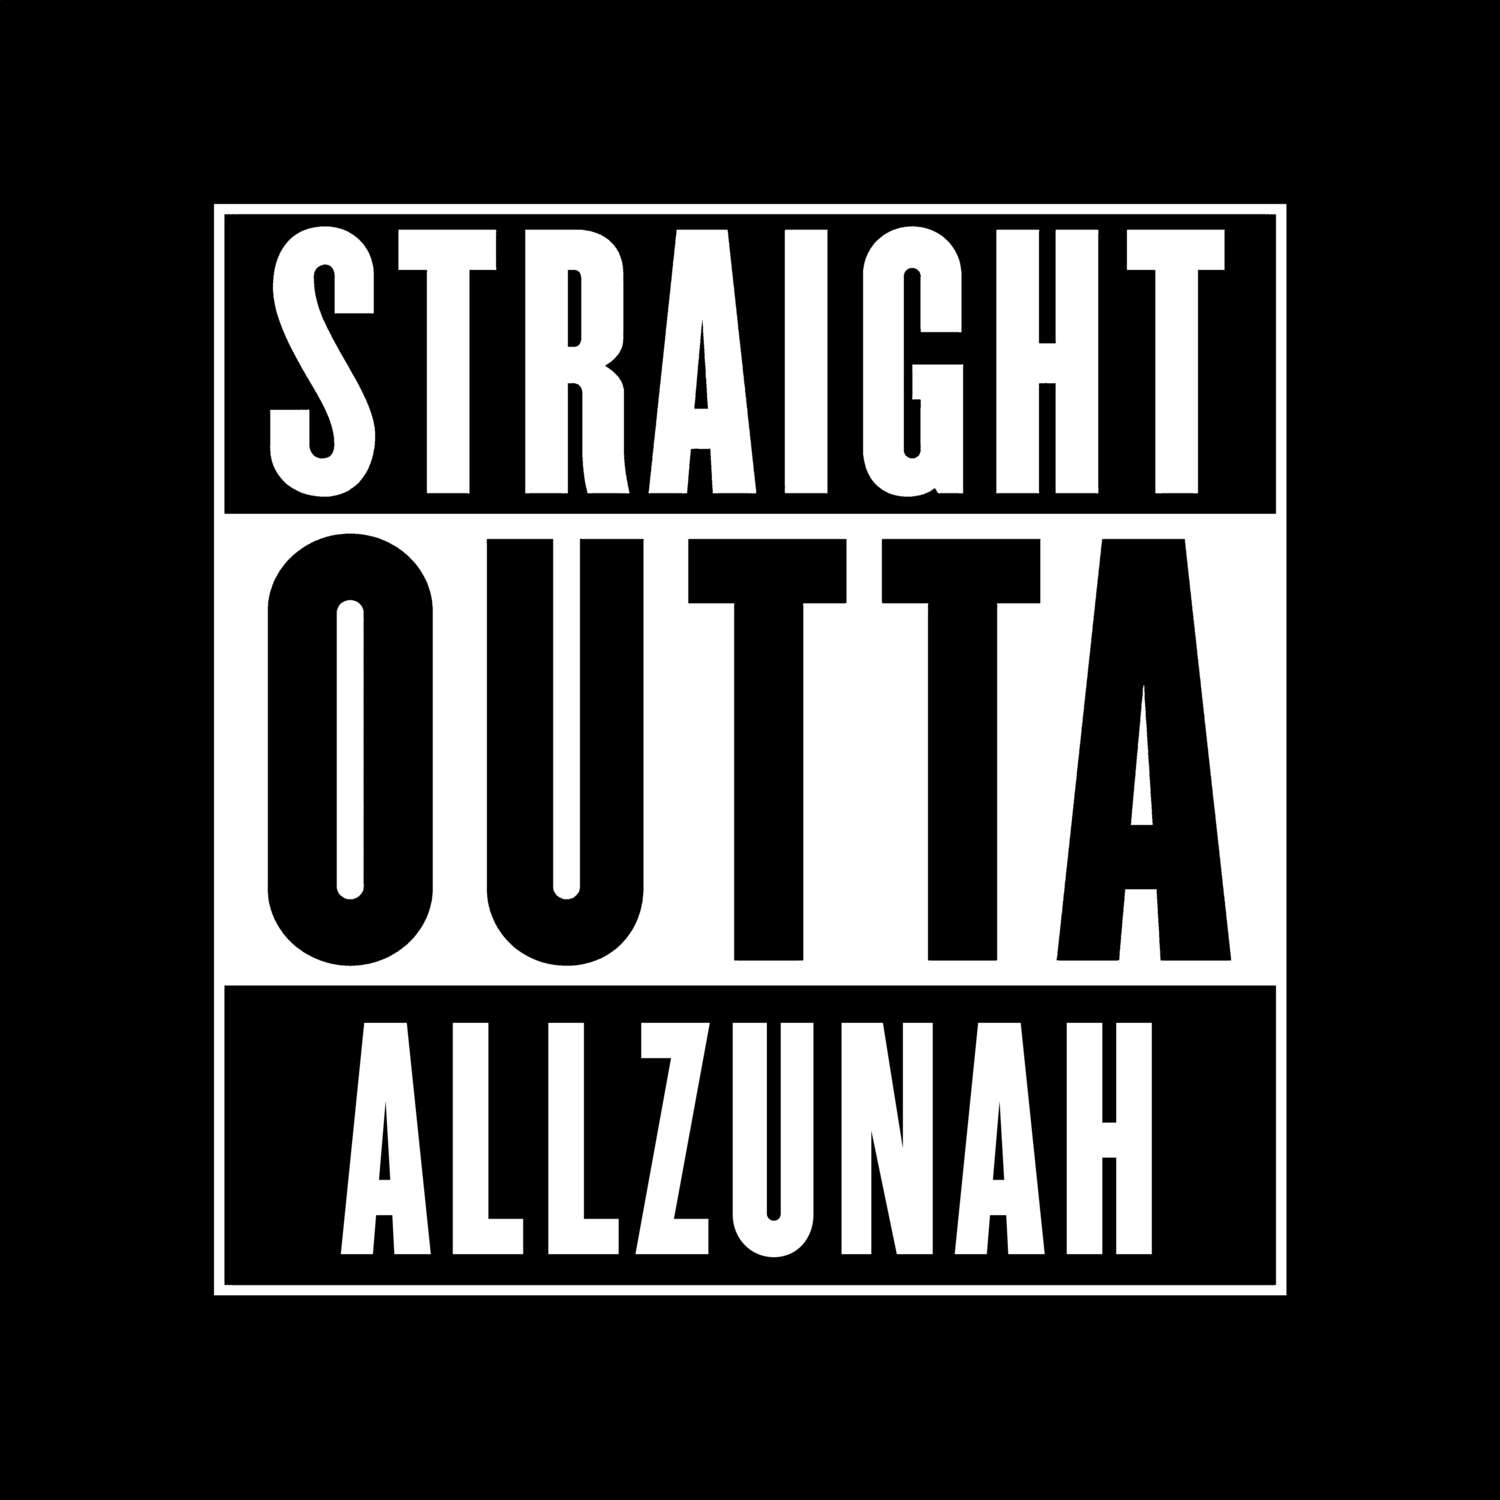 Allzunah T-Shirt »Straight Outta«